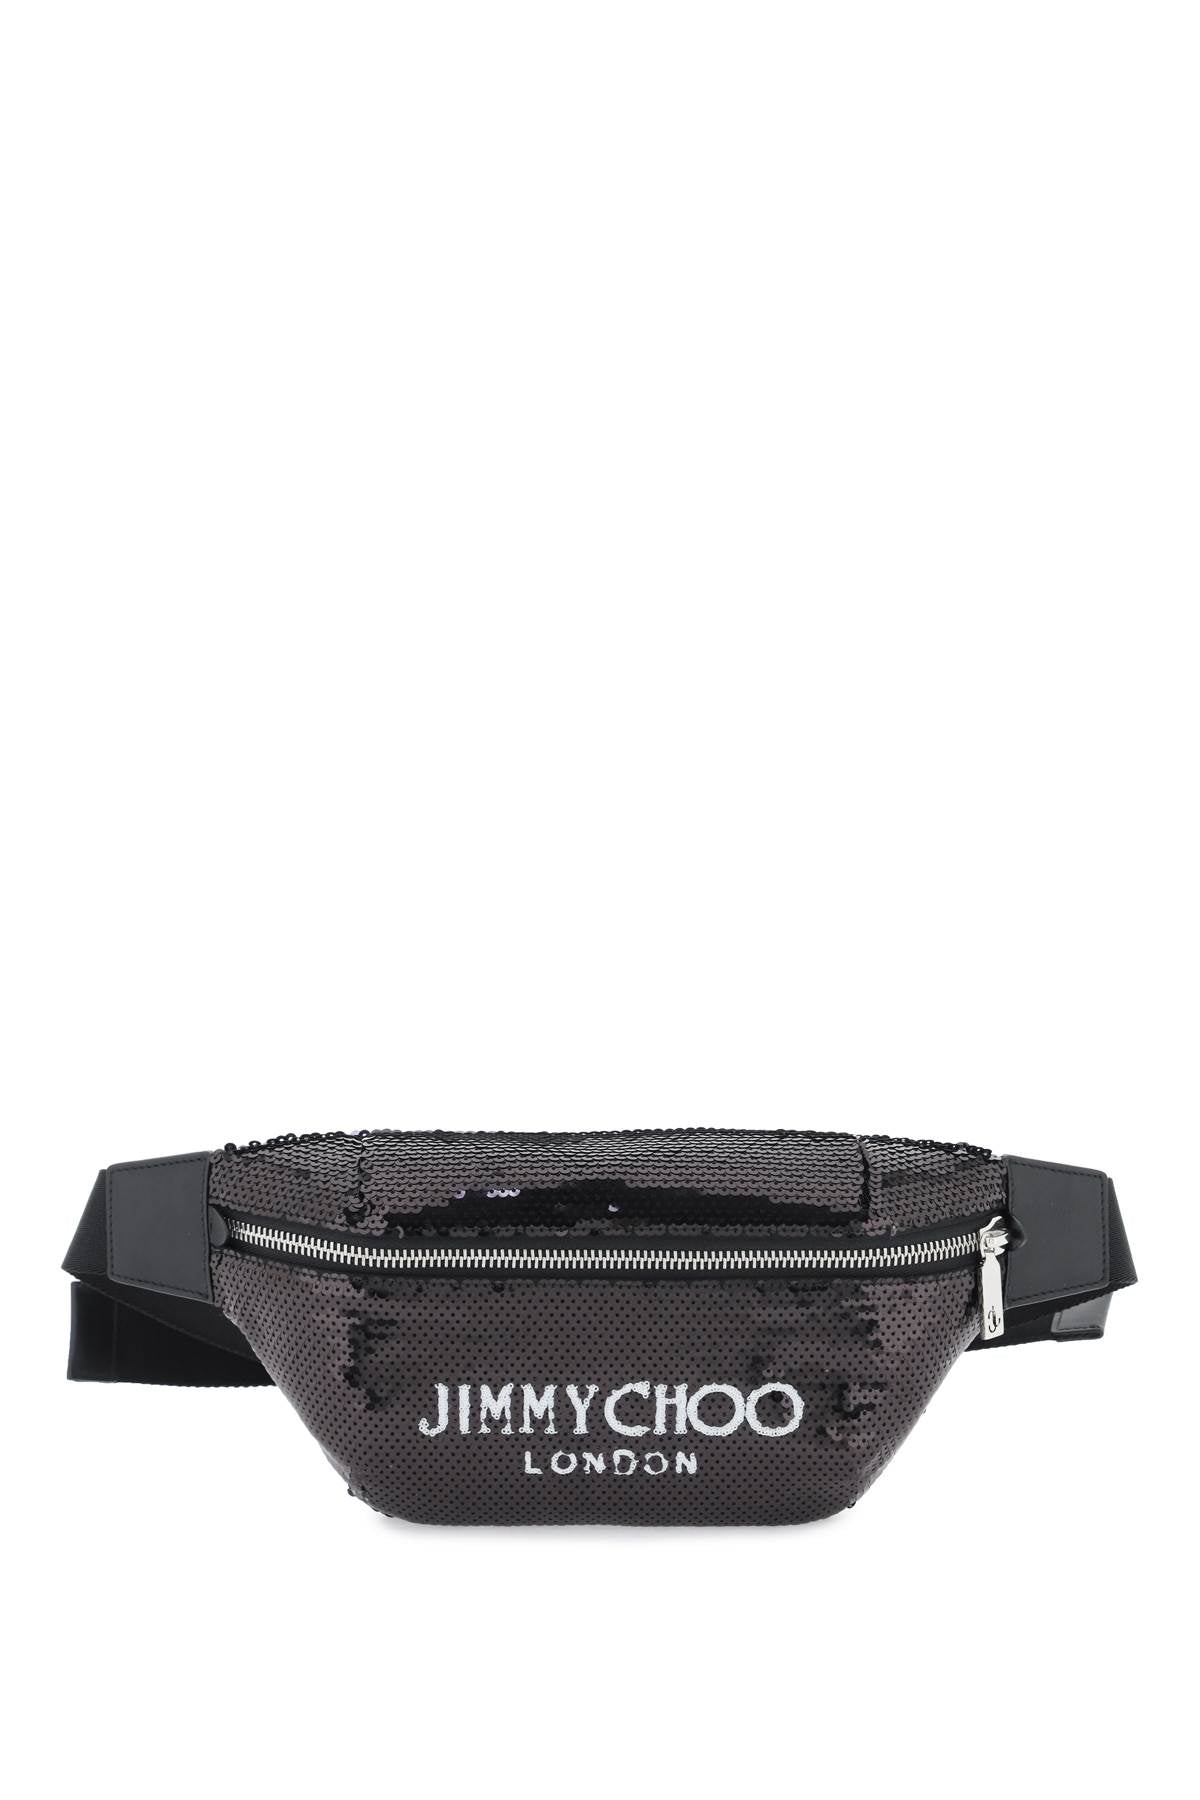 Jimmy choo finsley beltpack-0